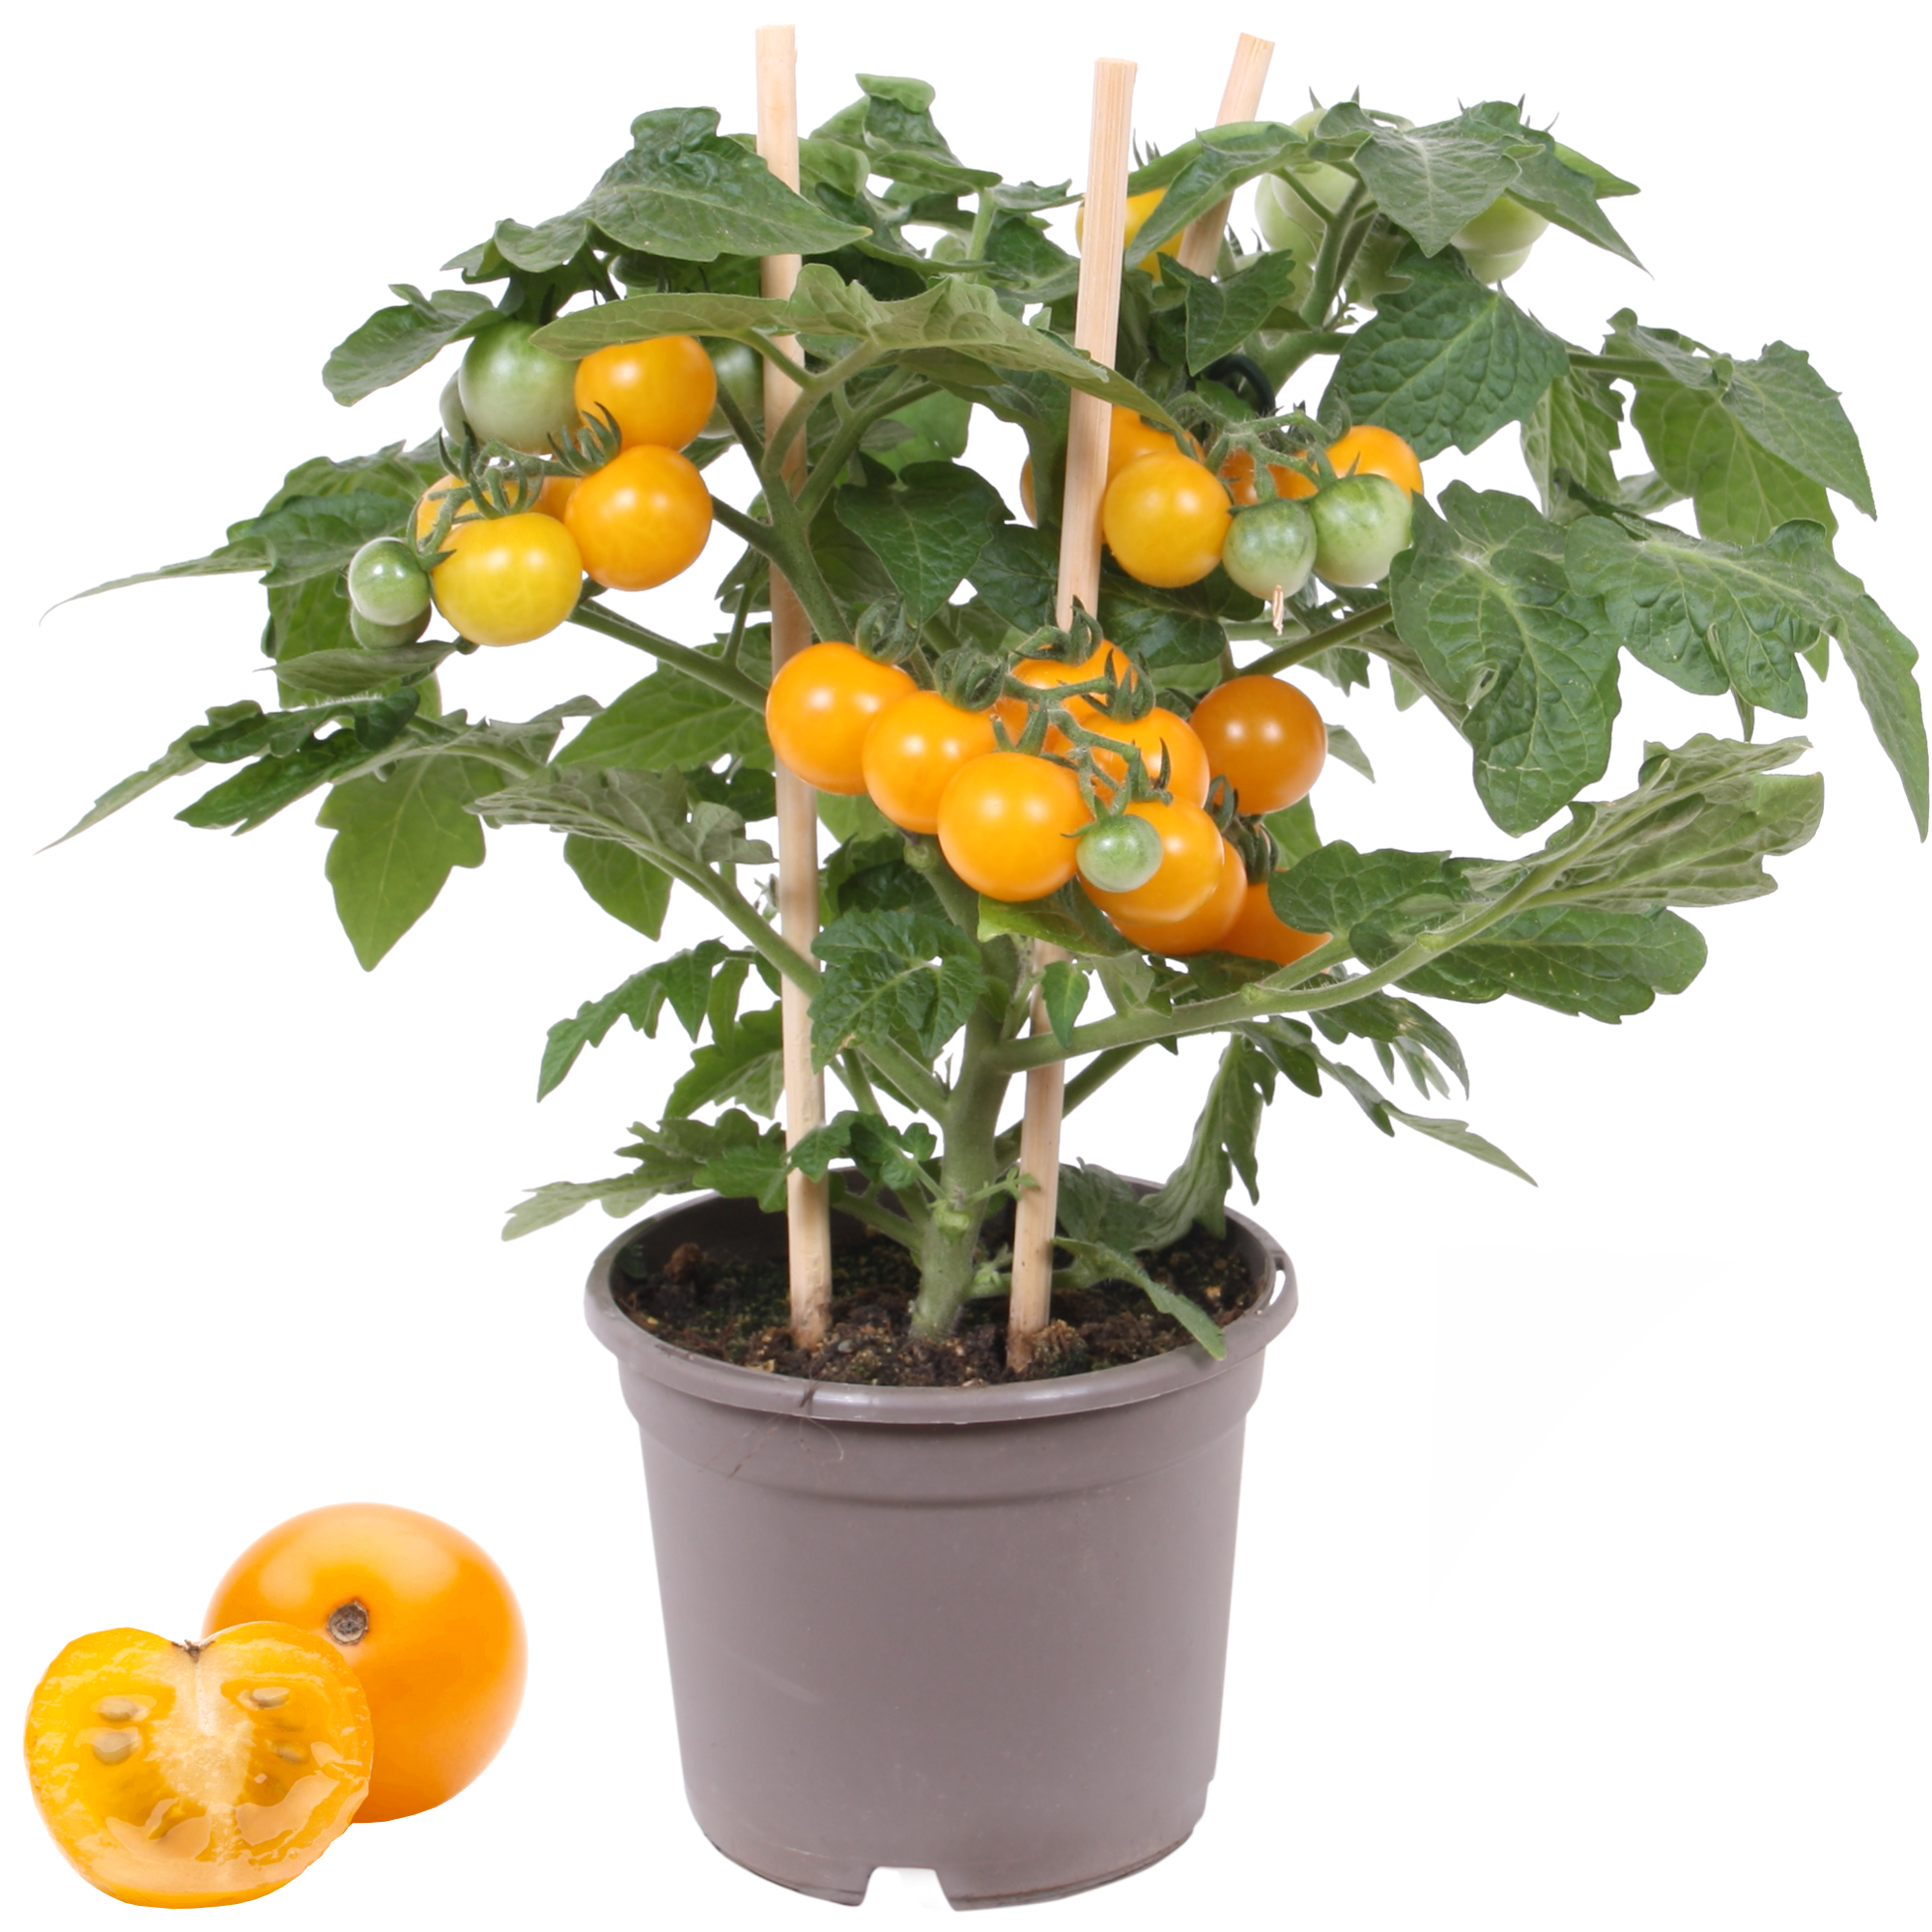 Cherrytomate mit Früchten, gelb, 14 cm Topf + product picture